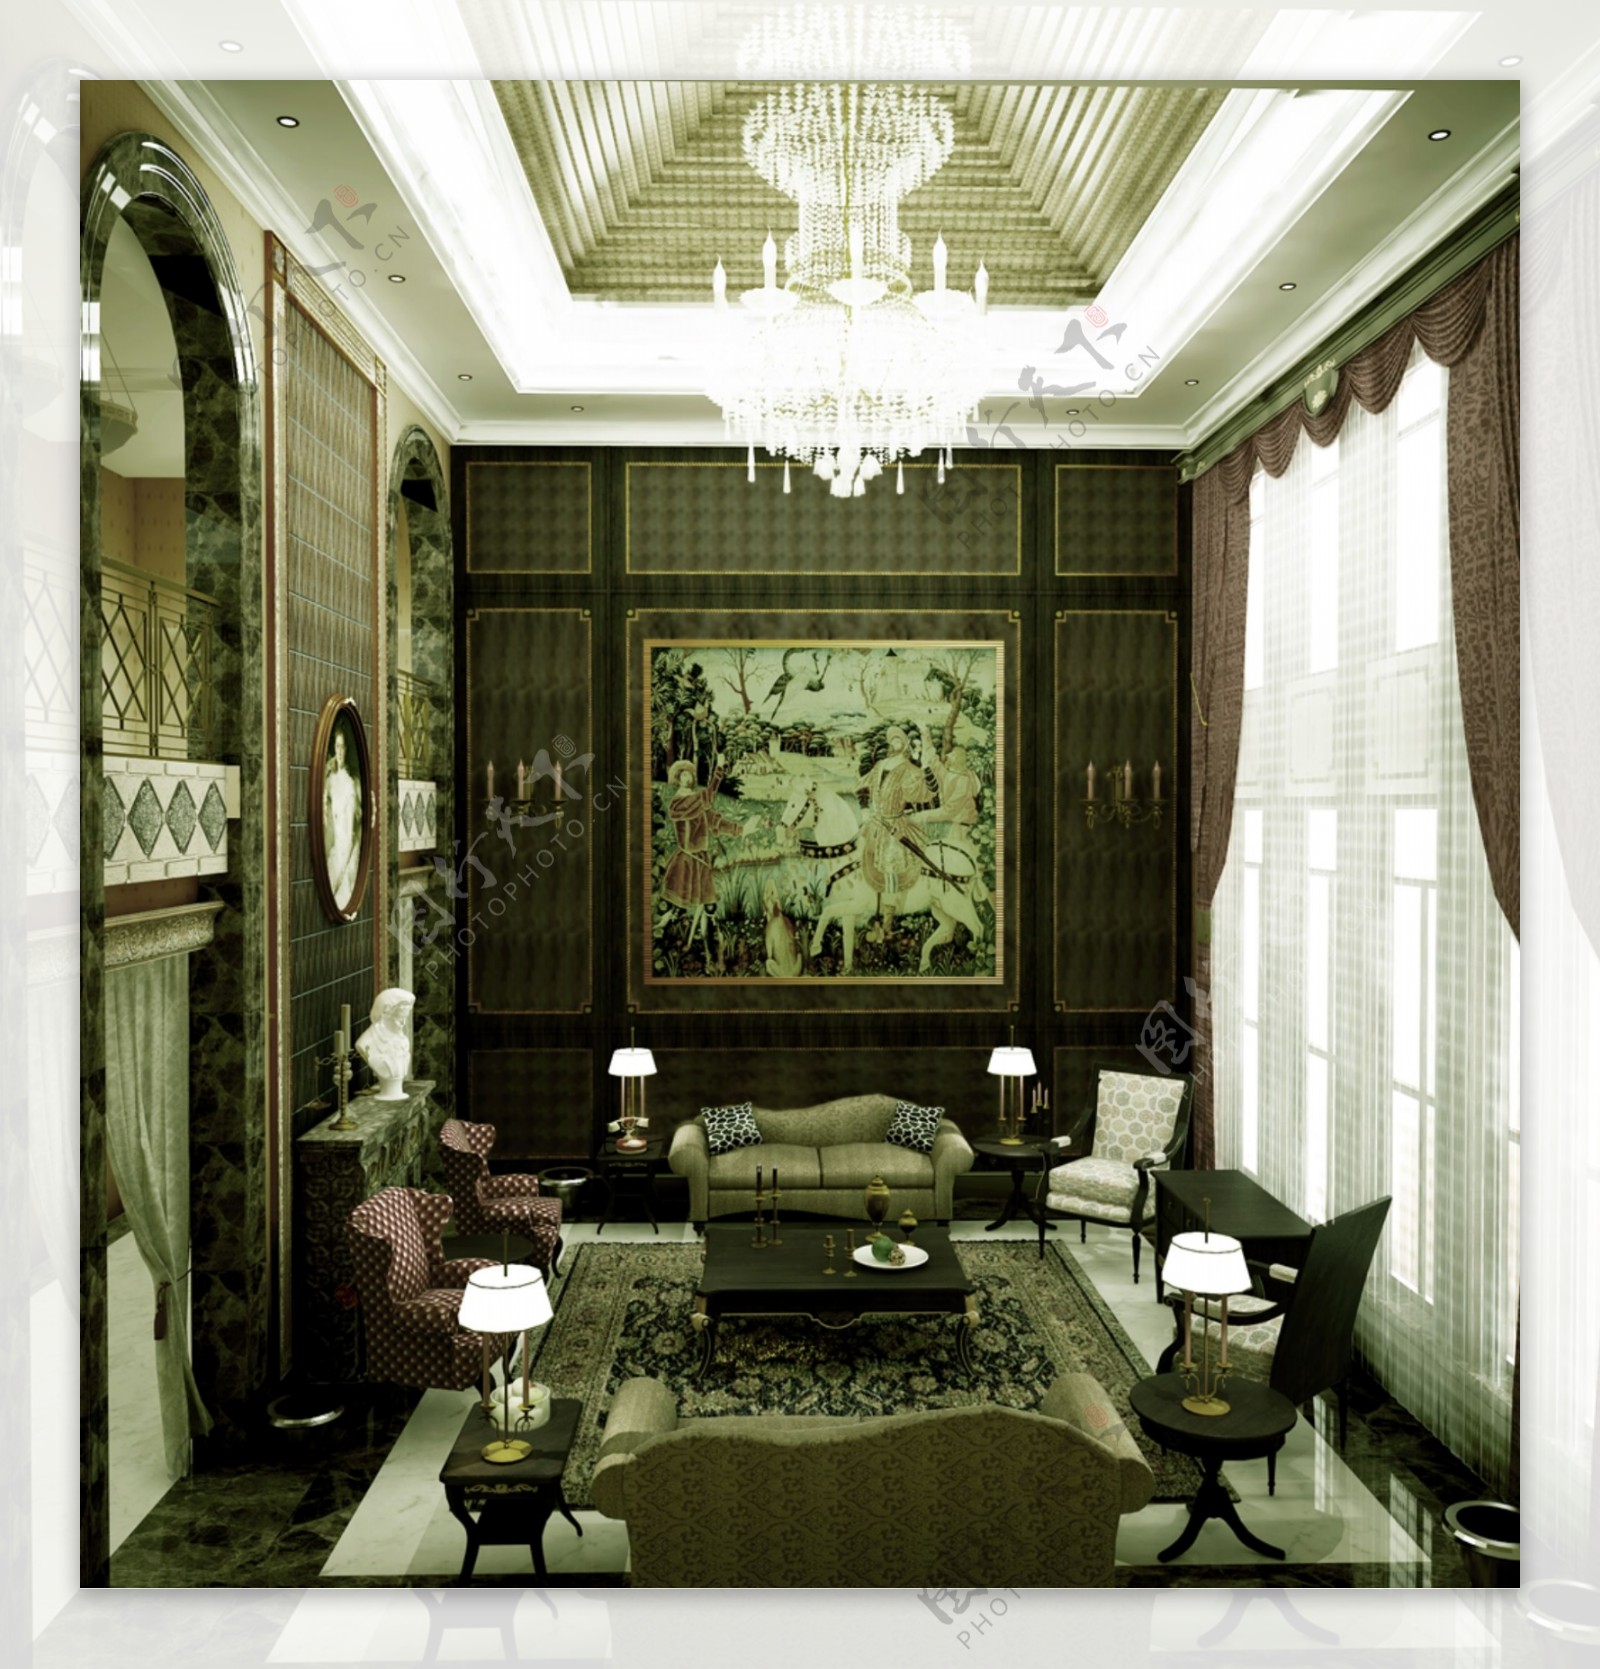 西式古典客厅设计效果图